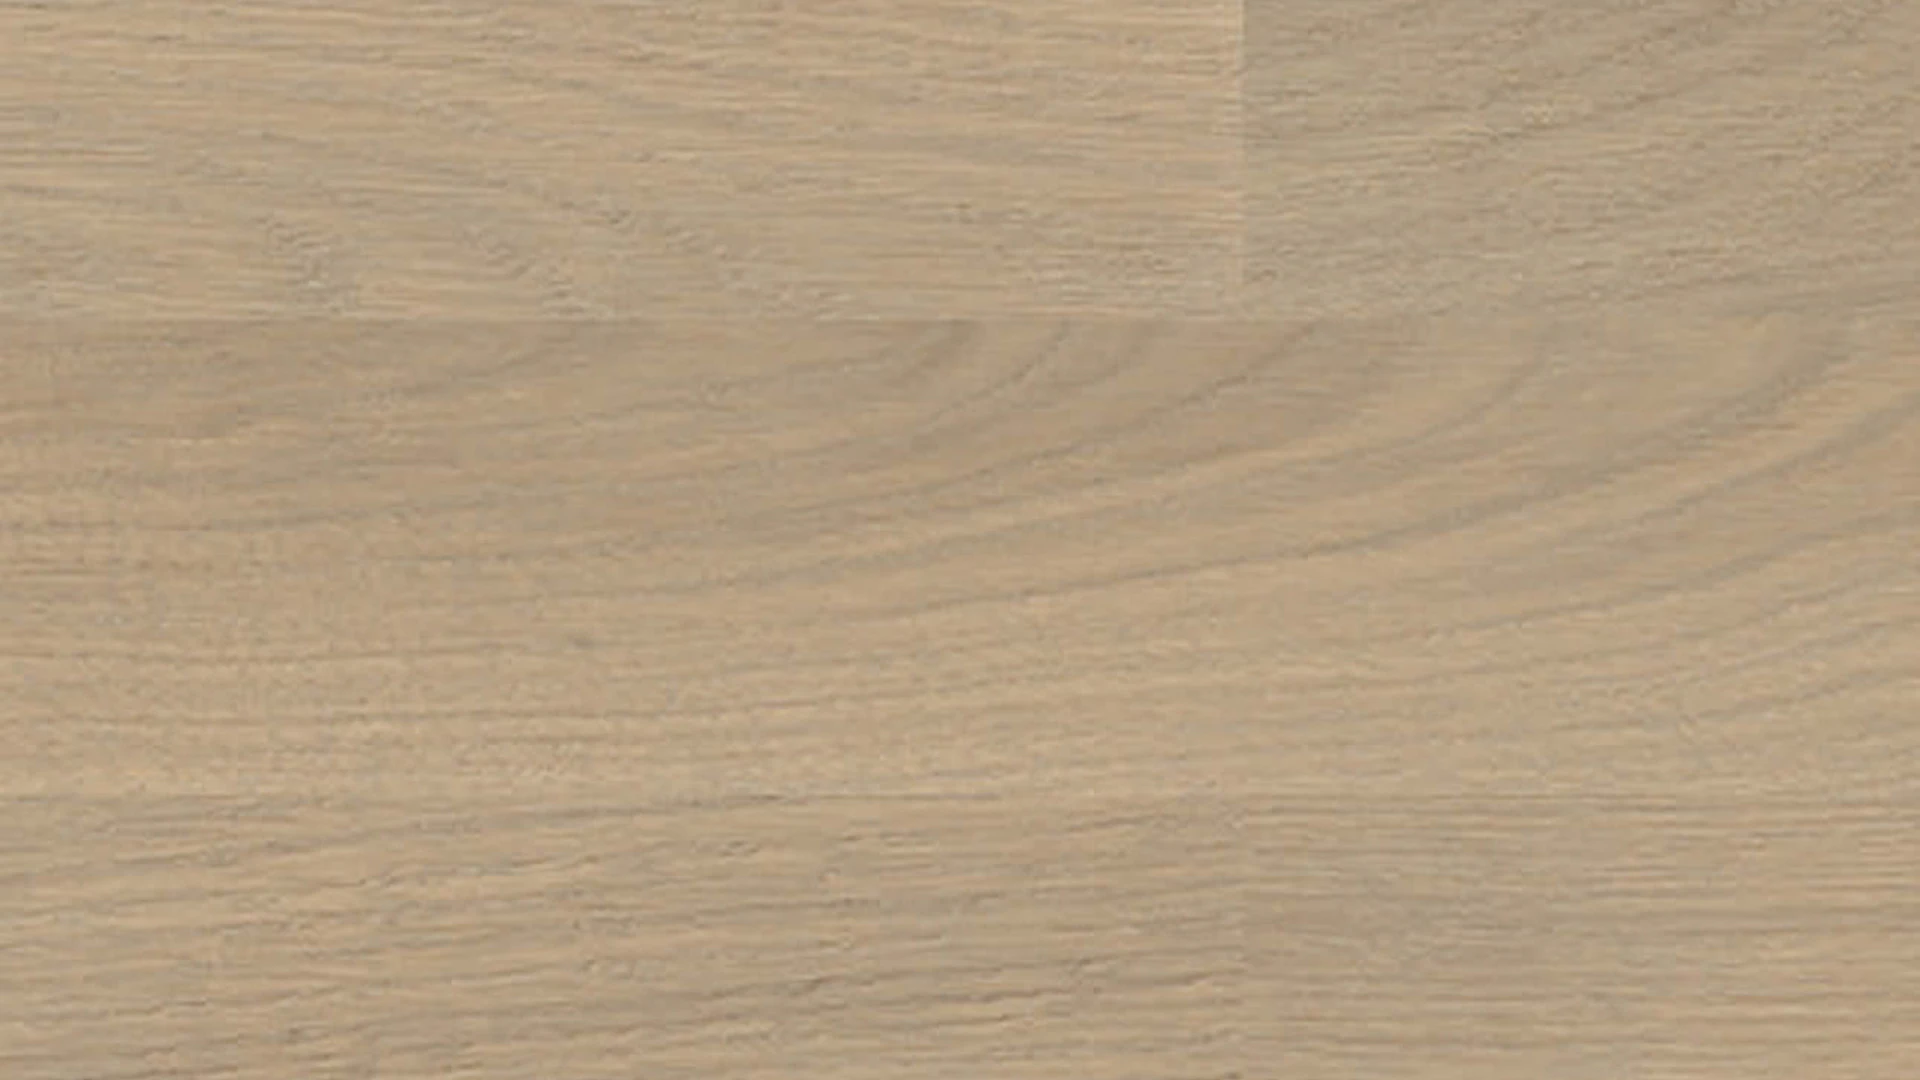 Haro Parquet - Series 4000 Stab Allegro naturaLin plus Quercia grigio sabbia Trend (540136)